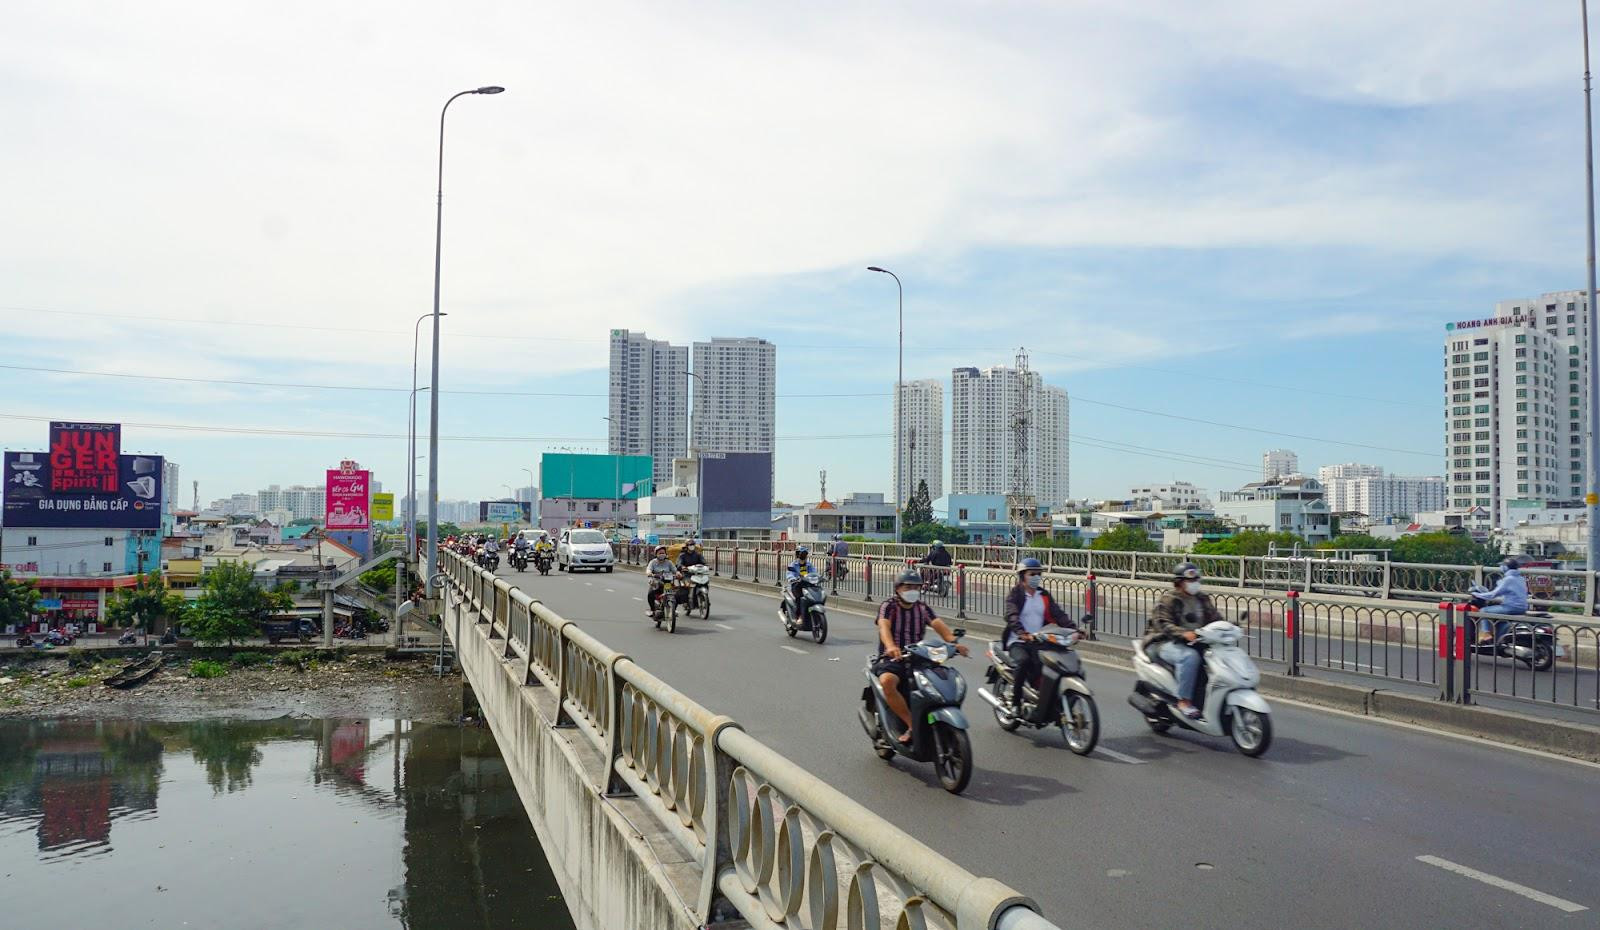 ‏Quận nhỏ nhất Việt Nam: Là một hòn đảo, có 8 cây cầu vượt sông - Ảnh 8.